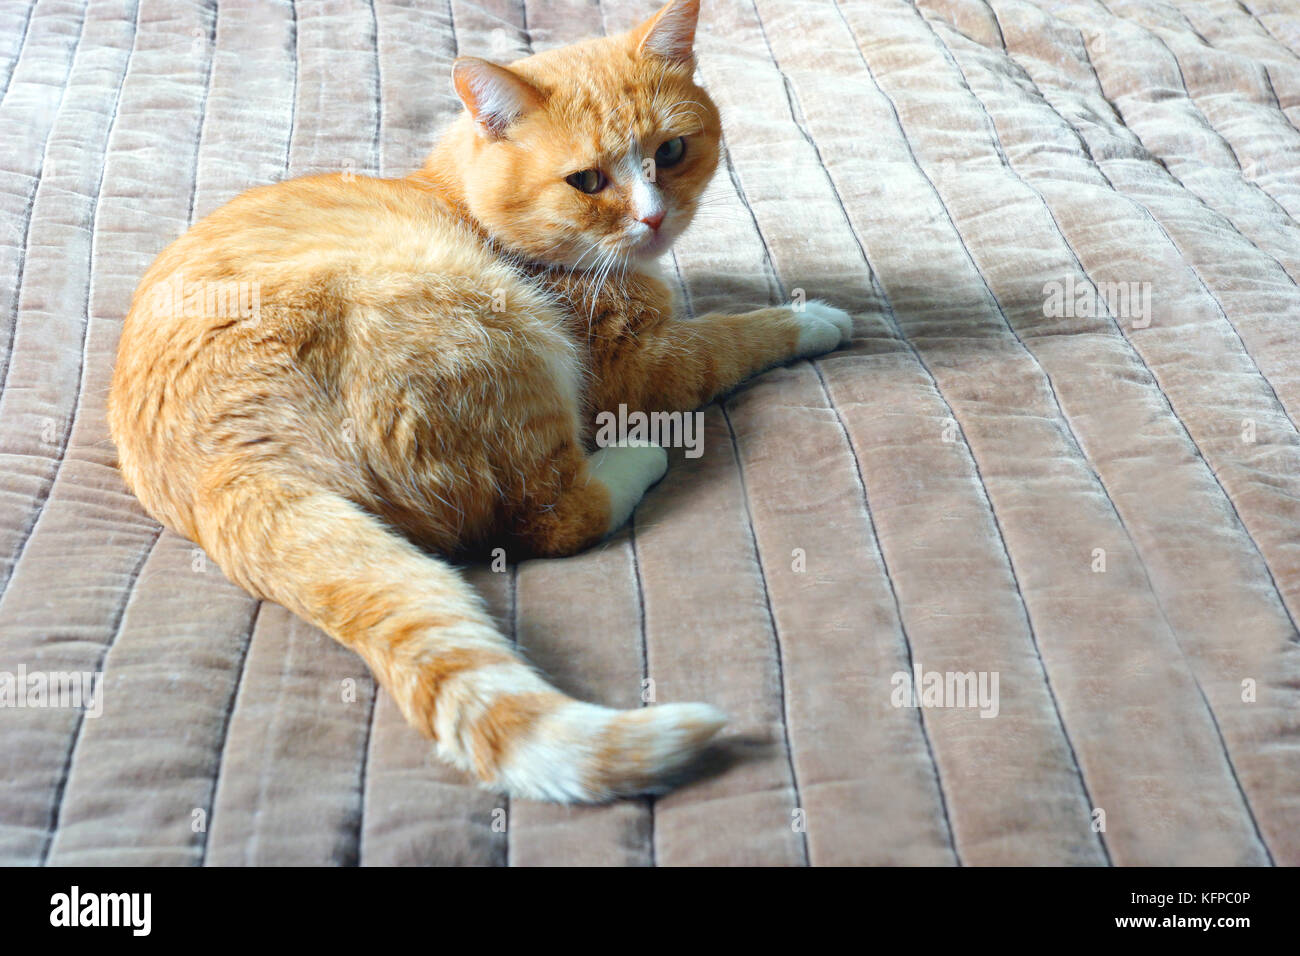 Le gingembre cat se trouve sur le lit. Banque D'Images